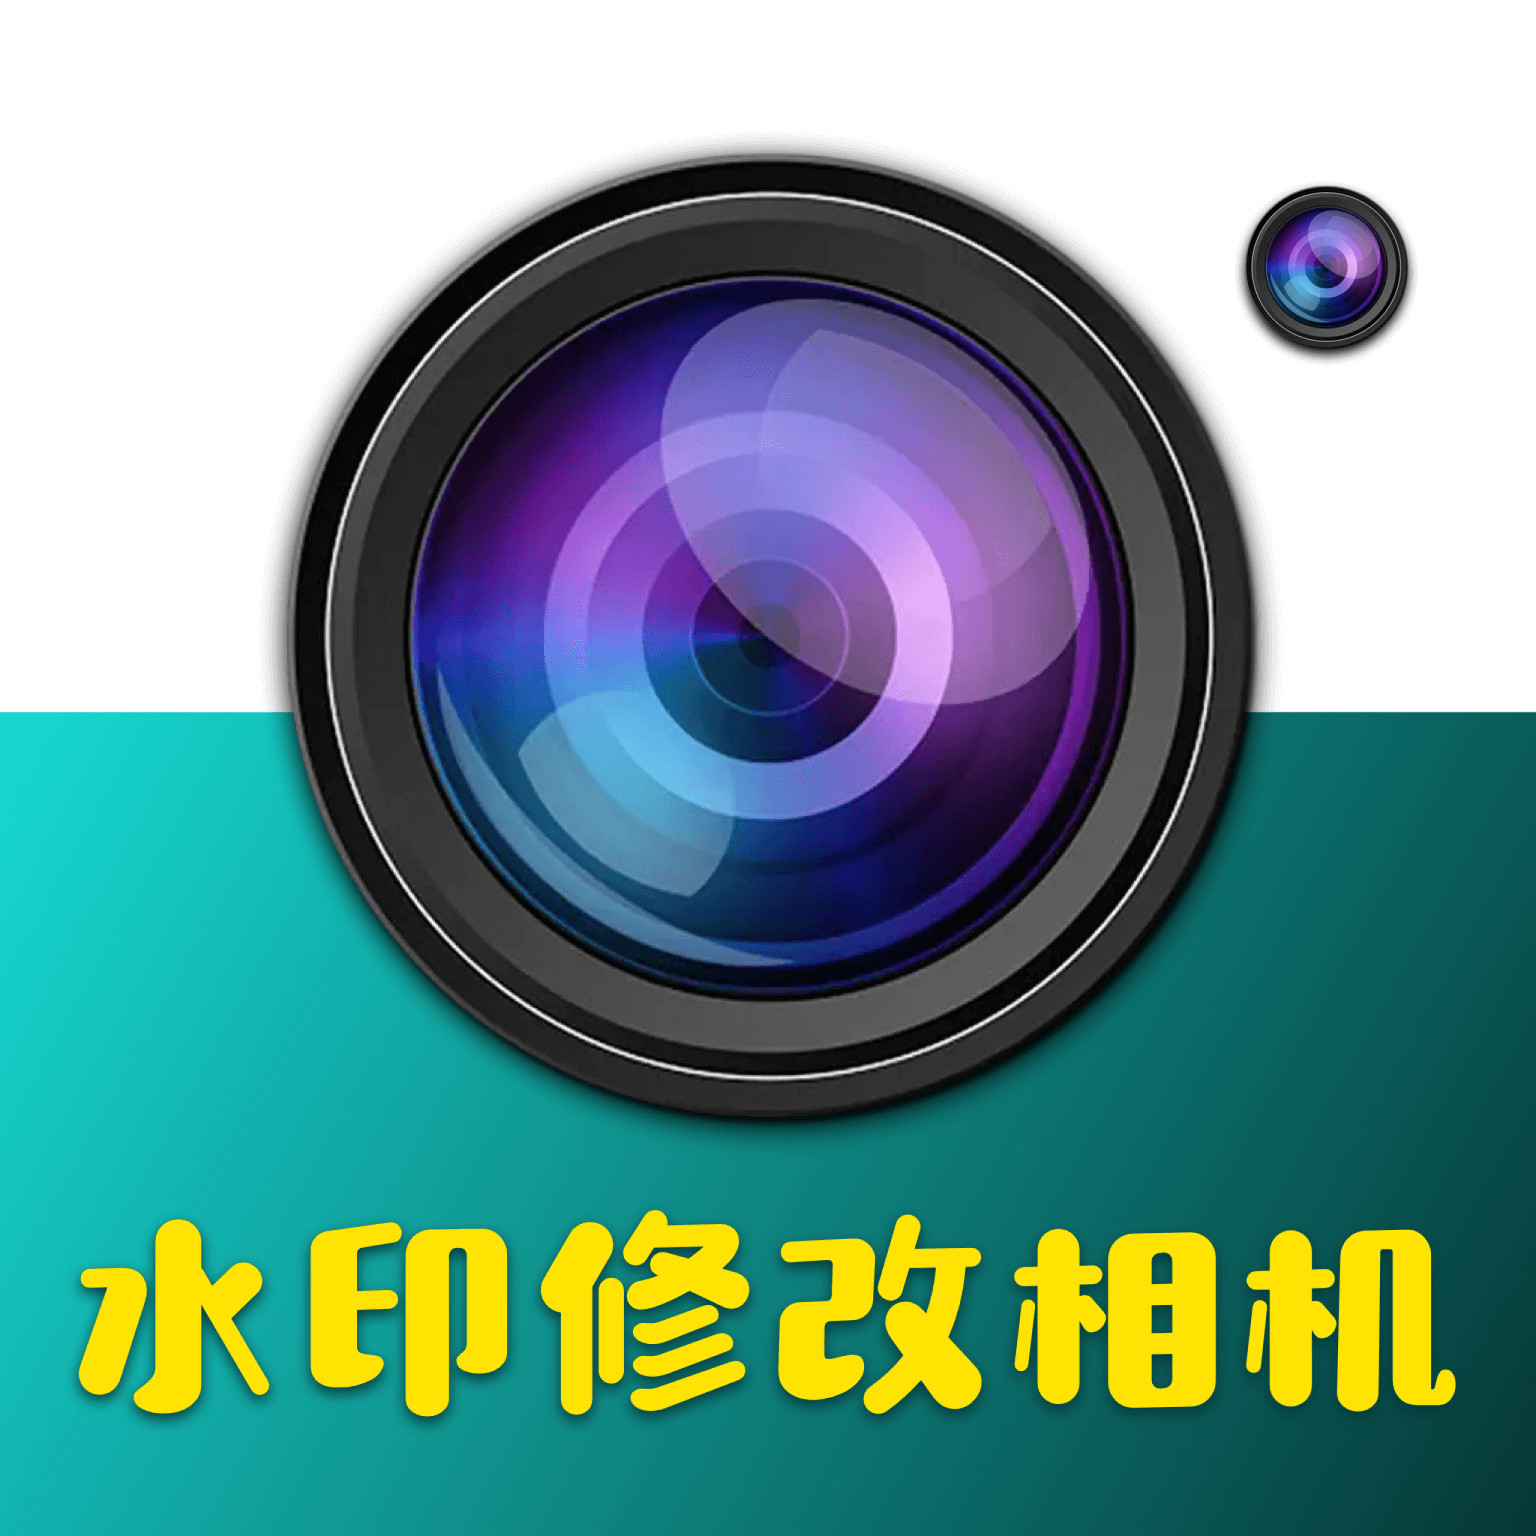 水印修改相机 1.0.0 最新版